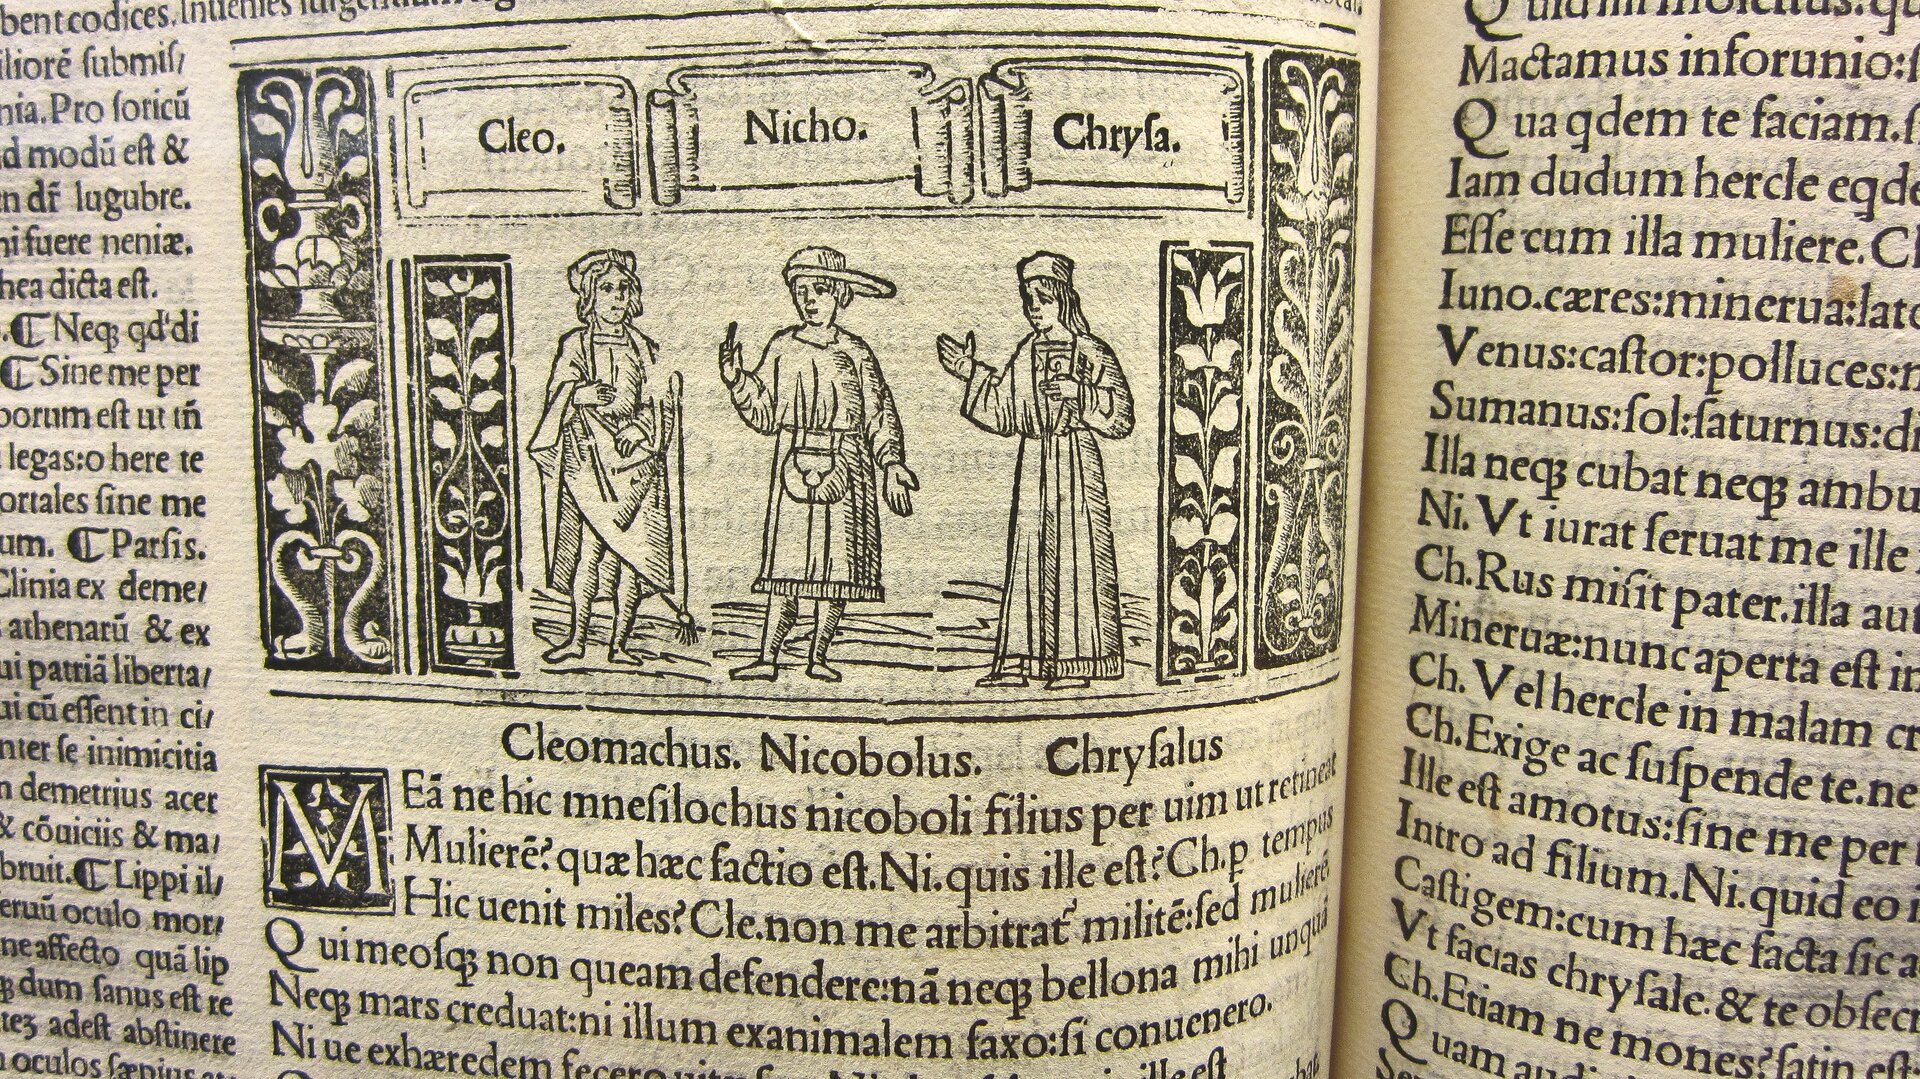 Fotografia przedstawiająca ilustrację z książki Plauta pod tytułem „Bacchides”. W centrum ukazane są trzy postacie podpisane jako: Cleomachus, Nicobolus, Chryfalus. Wokół nich znajduje się tekst w języku łacińskim.